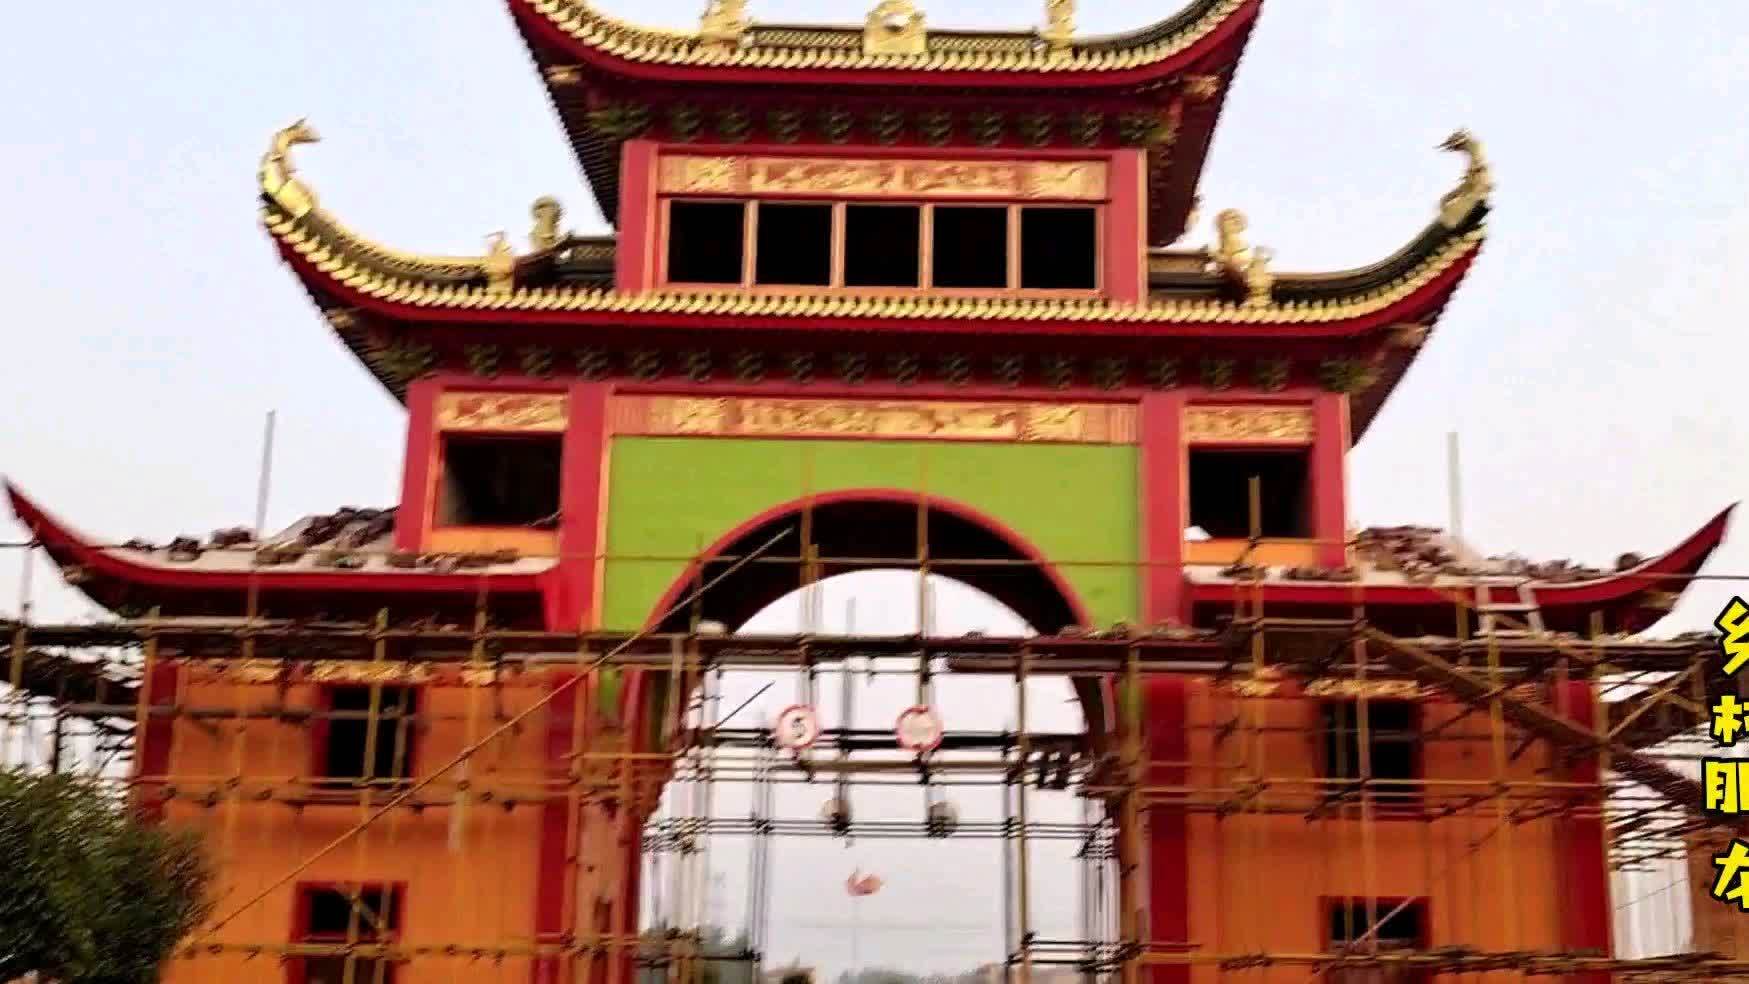 坐标:汉川市麻河镇太平寺,投资17亿的在建寺庙